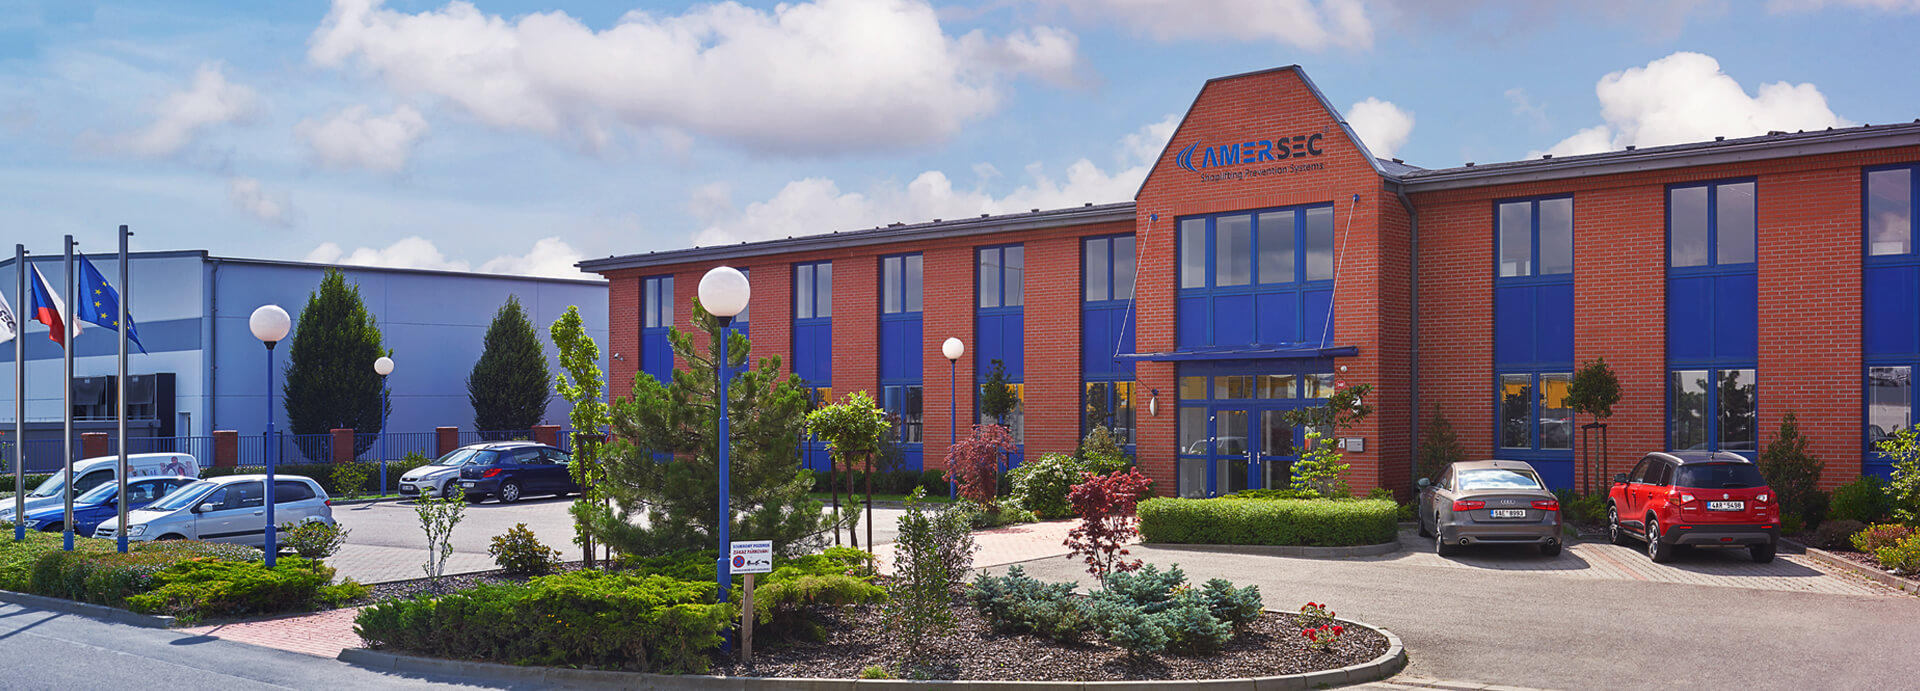 About Amersec - foto hoofdkantoor